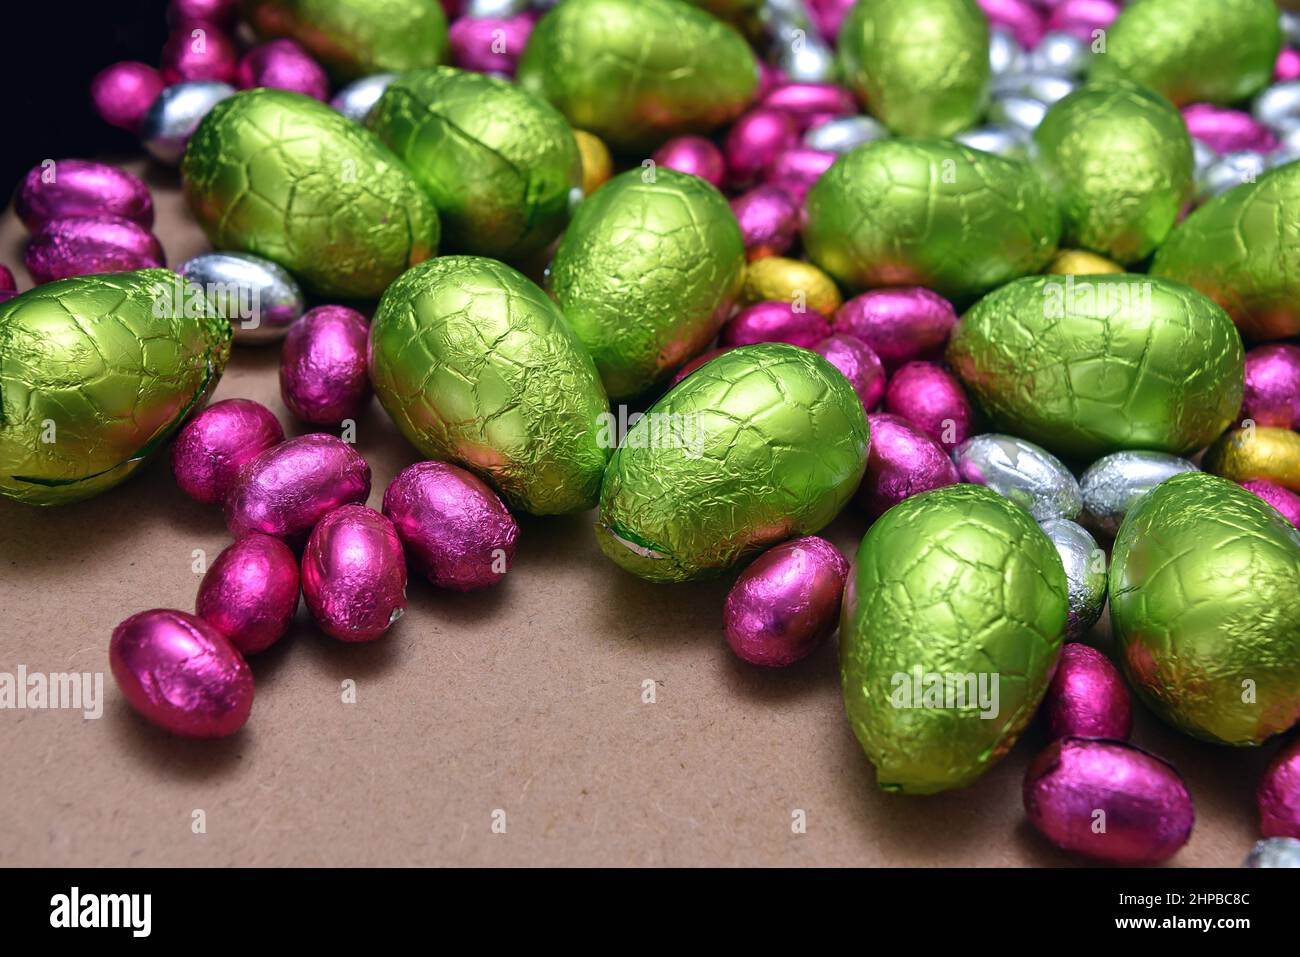 Kleine rosa, gelbe, grüne und silberne, in Folie gewickelte Ostereier aus Schokolade mit größeren lindgrünen Eiern vor einem hellen Holzhintergrund. Stockfoto